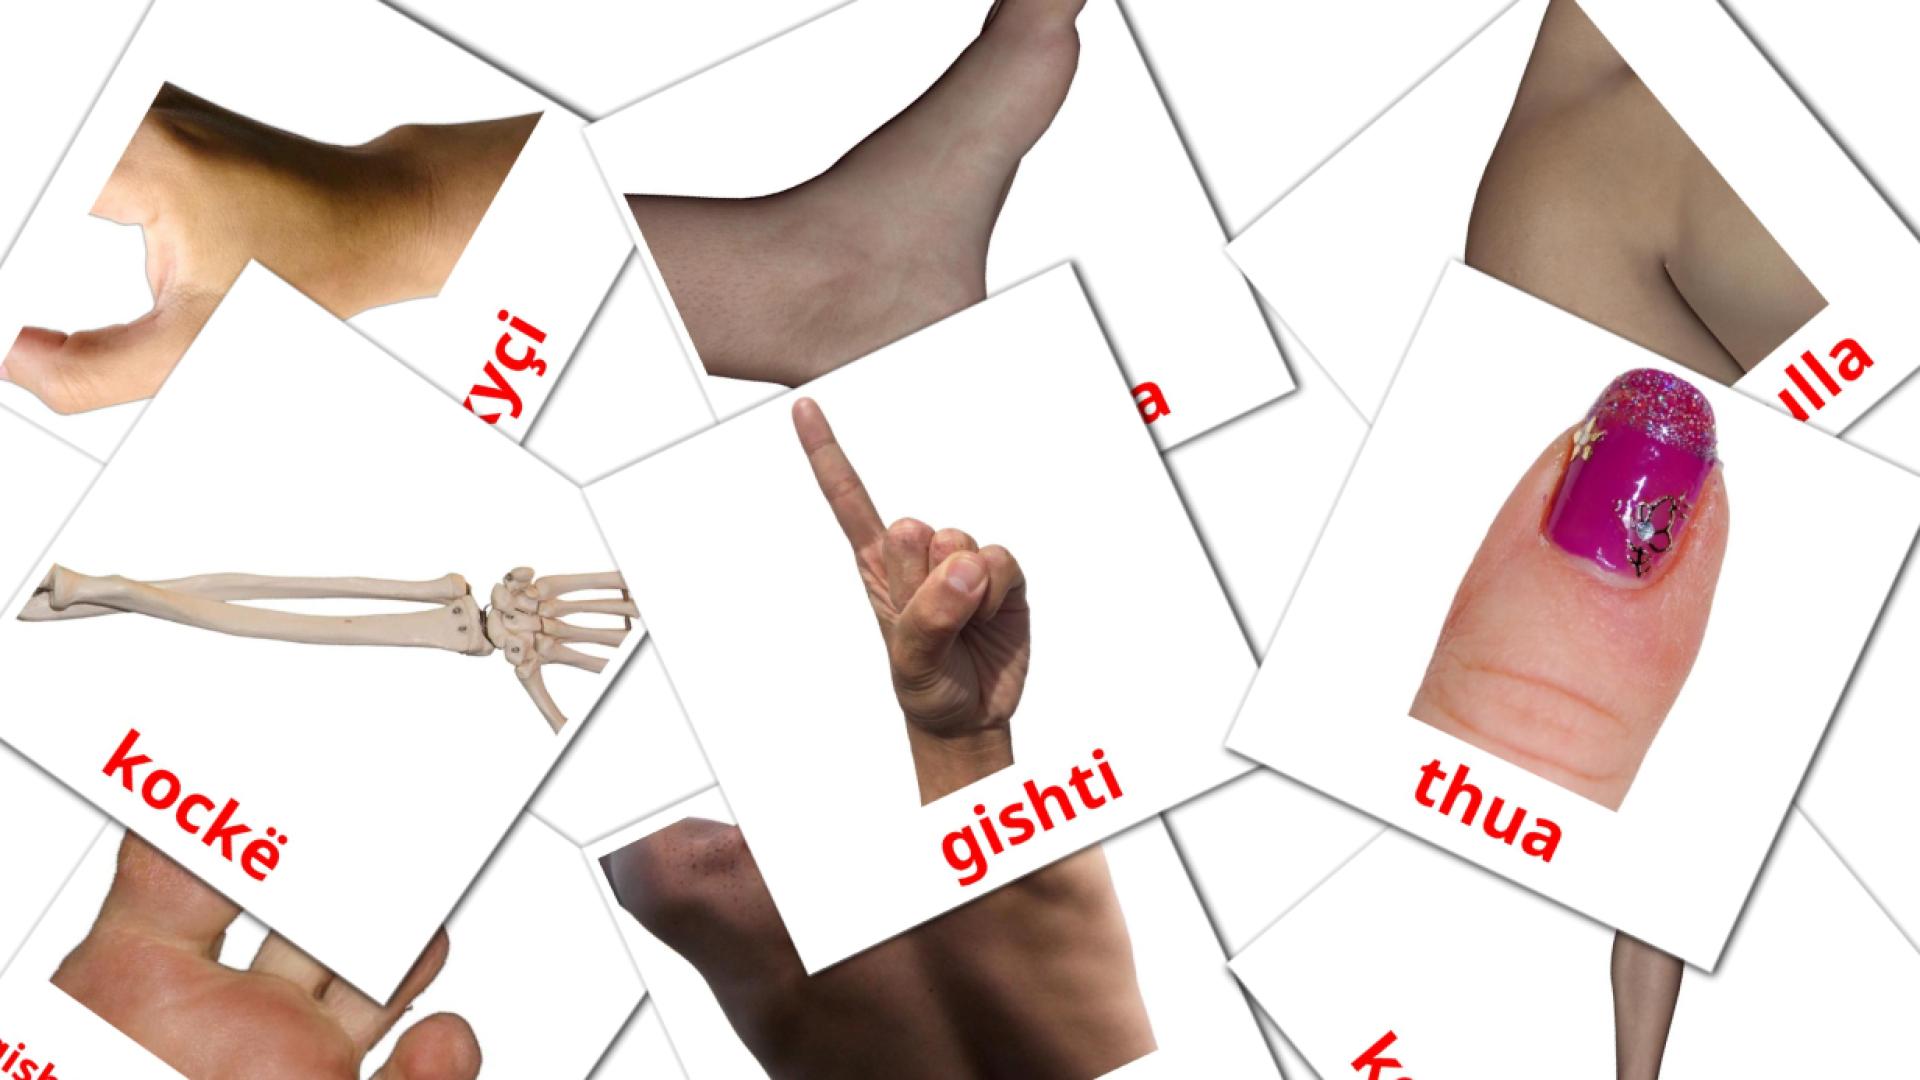 Lichaamsdelen - albanesee woordenschatkaarten